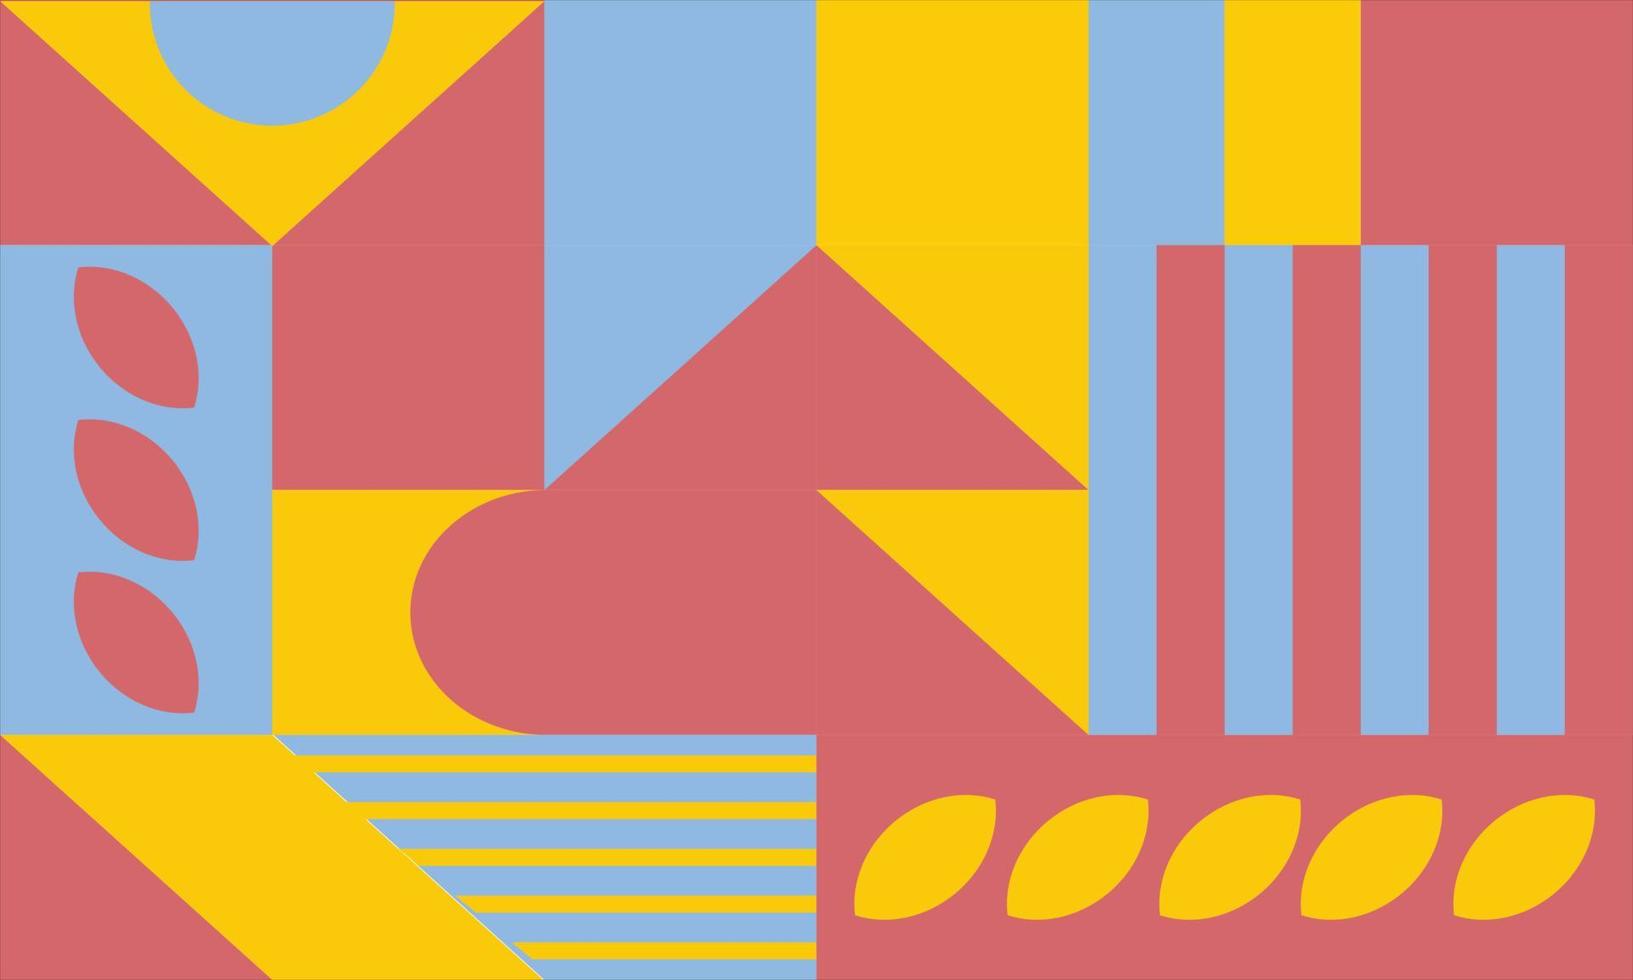 einfacher hintergrund in roter und gelber grundfarbe mit abstraktem geometrischem muster. minimalistische flache Tapeten und sanfte Farben. Dreieck, Quadrat, Rechteck, Kreis, Raute und andere Formen vektor